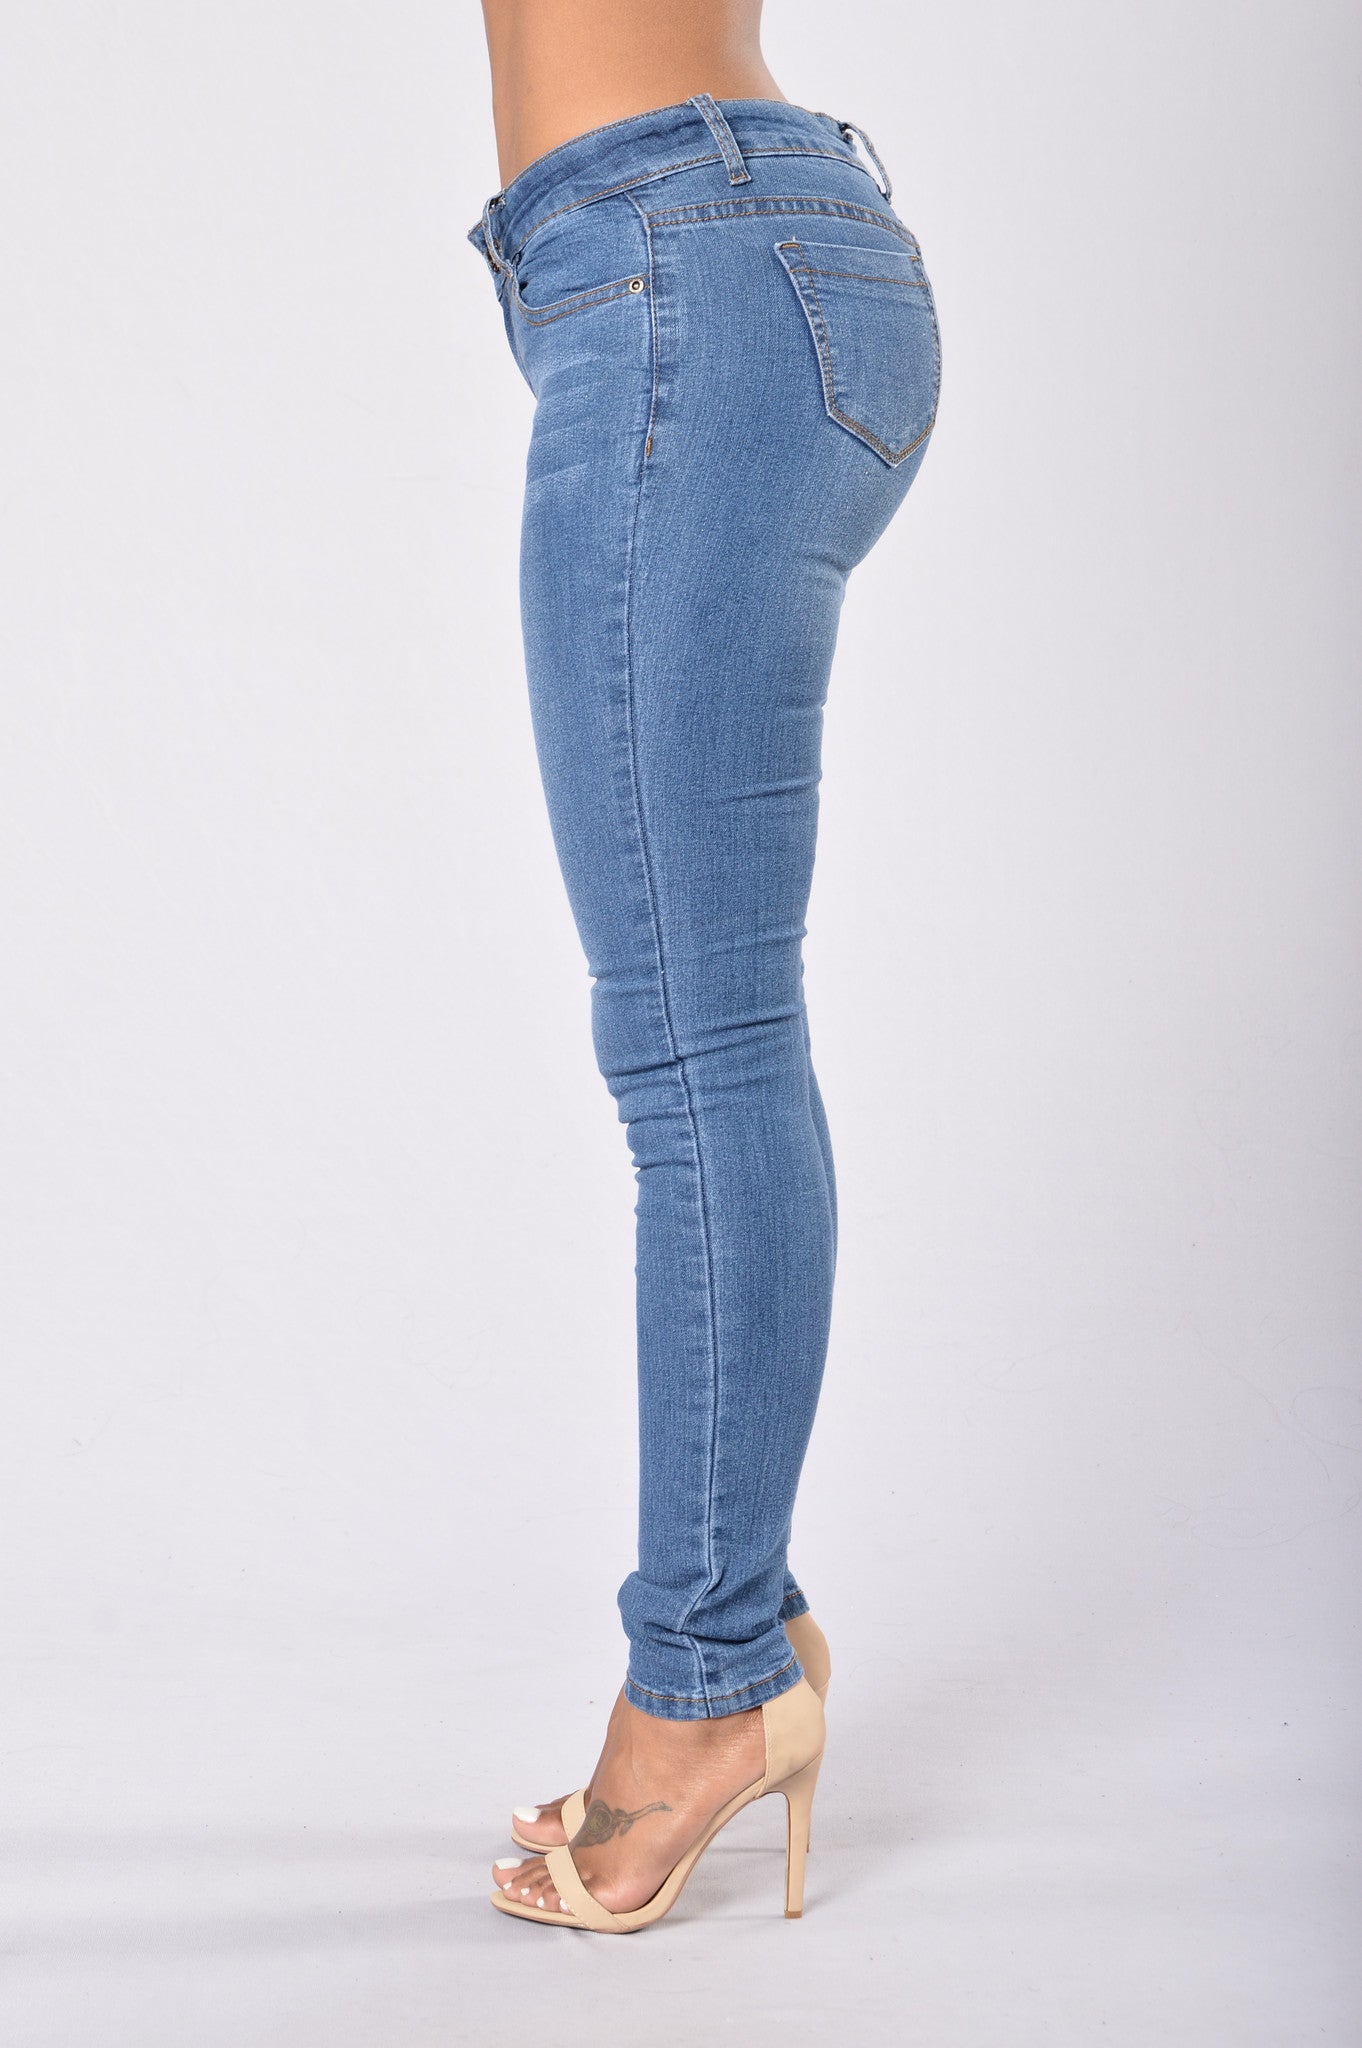 Minimal Effort Jeans - Medium Blue